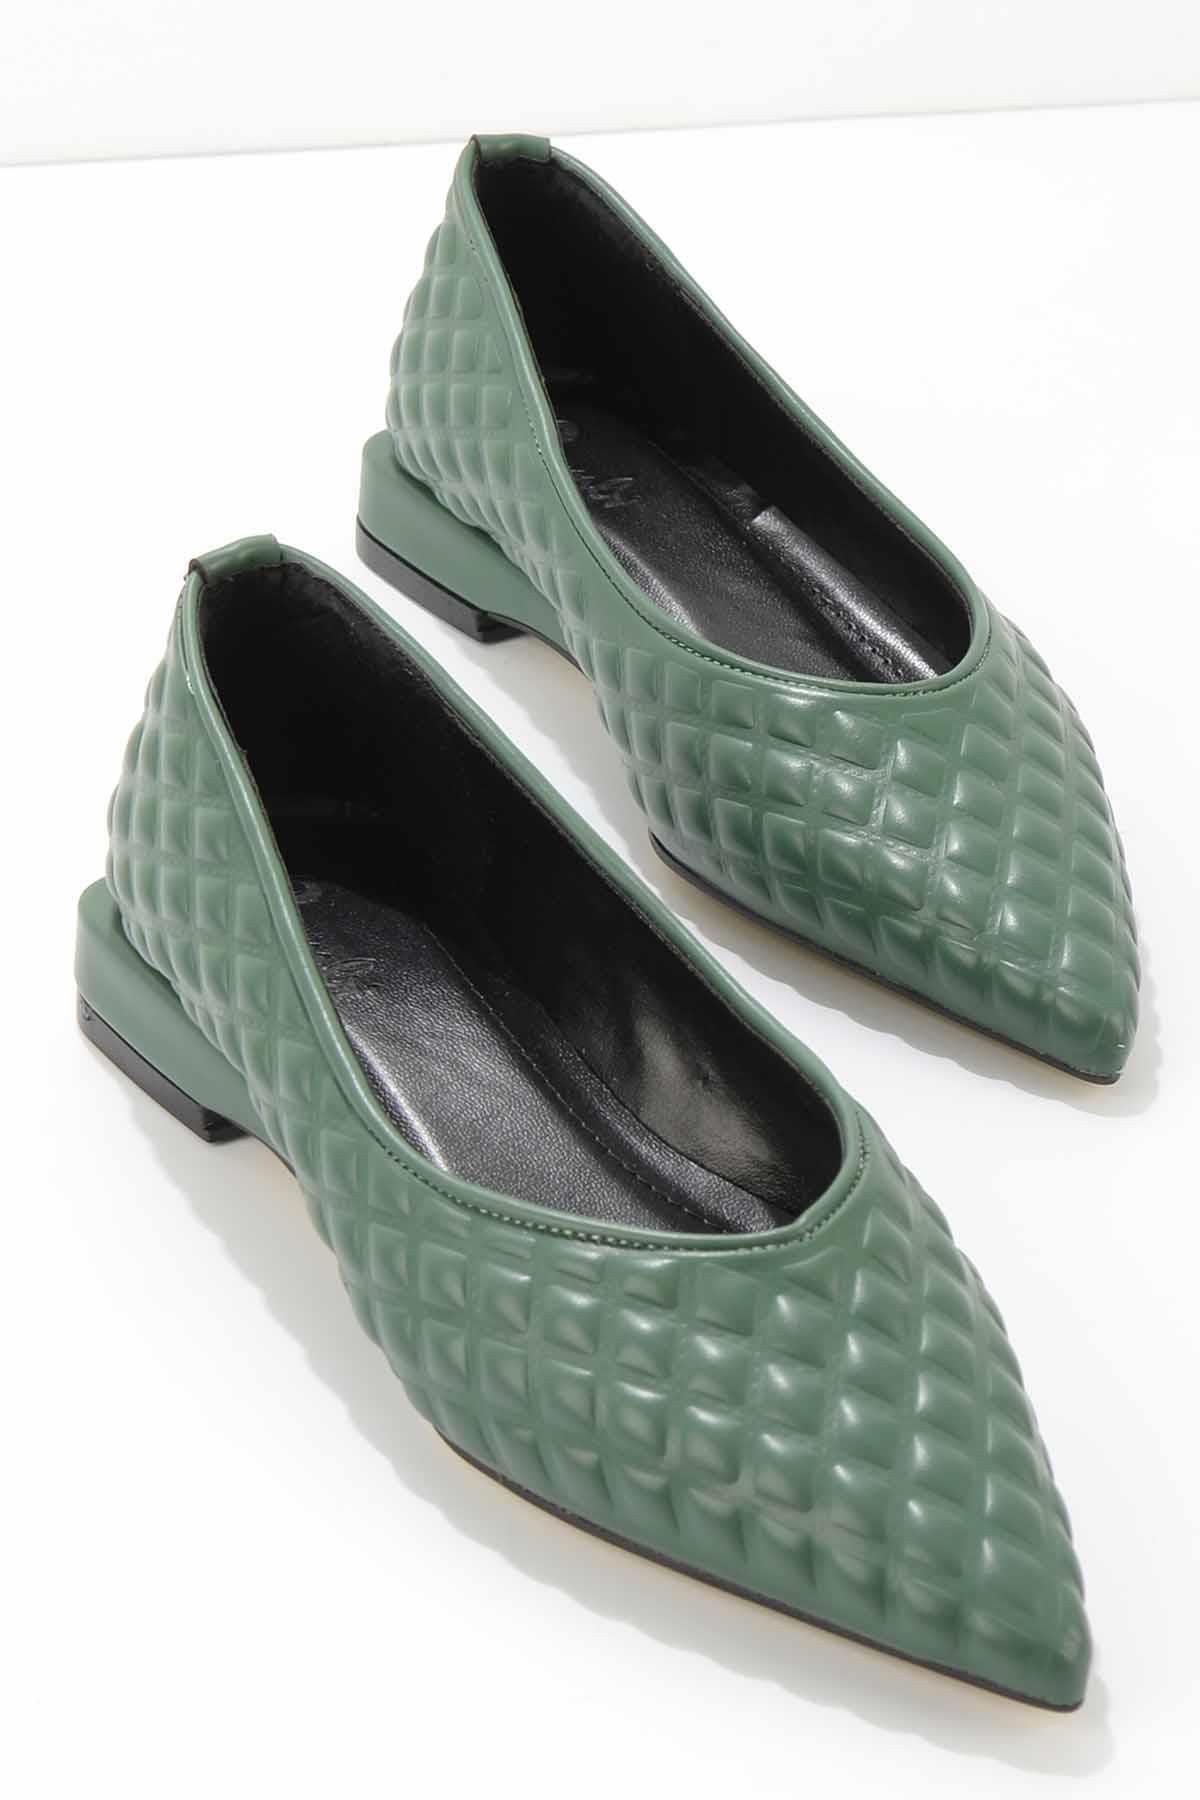 Bambi Yeşil Kadın Klasik Topuklu Ayakkabı K01188120909